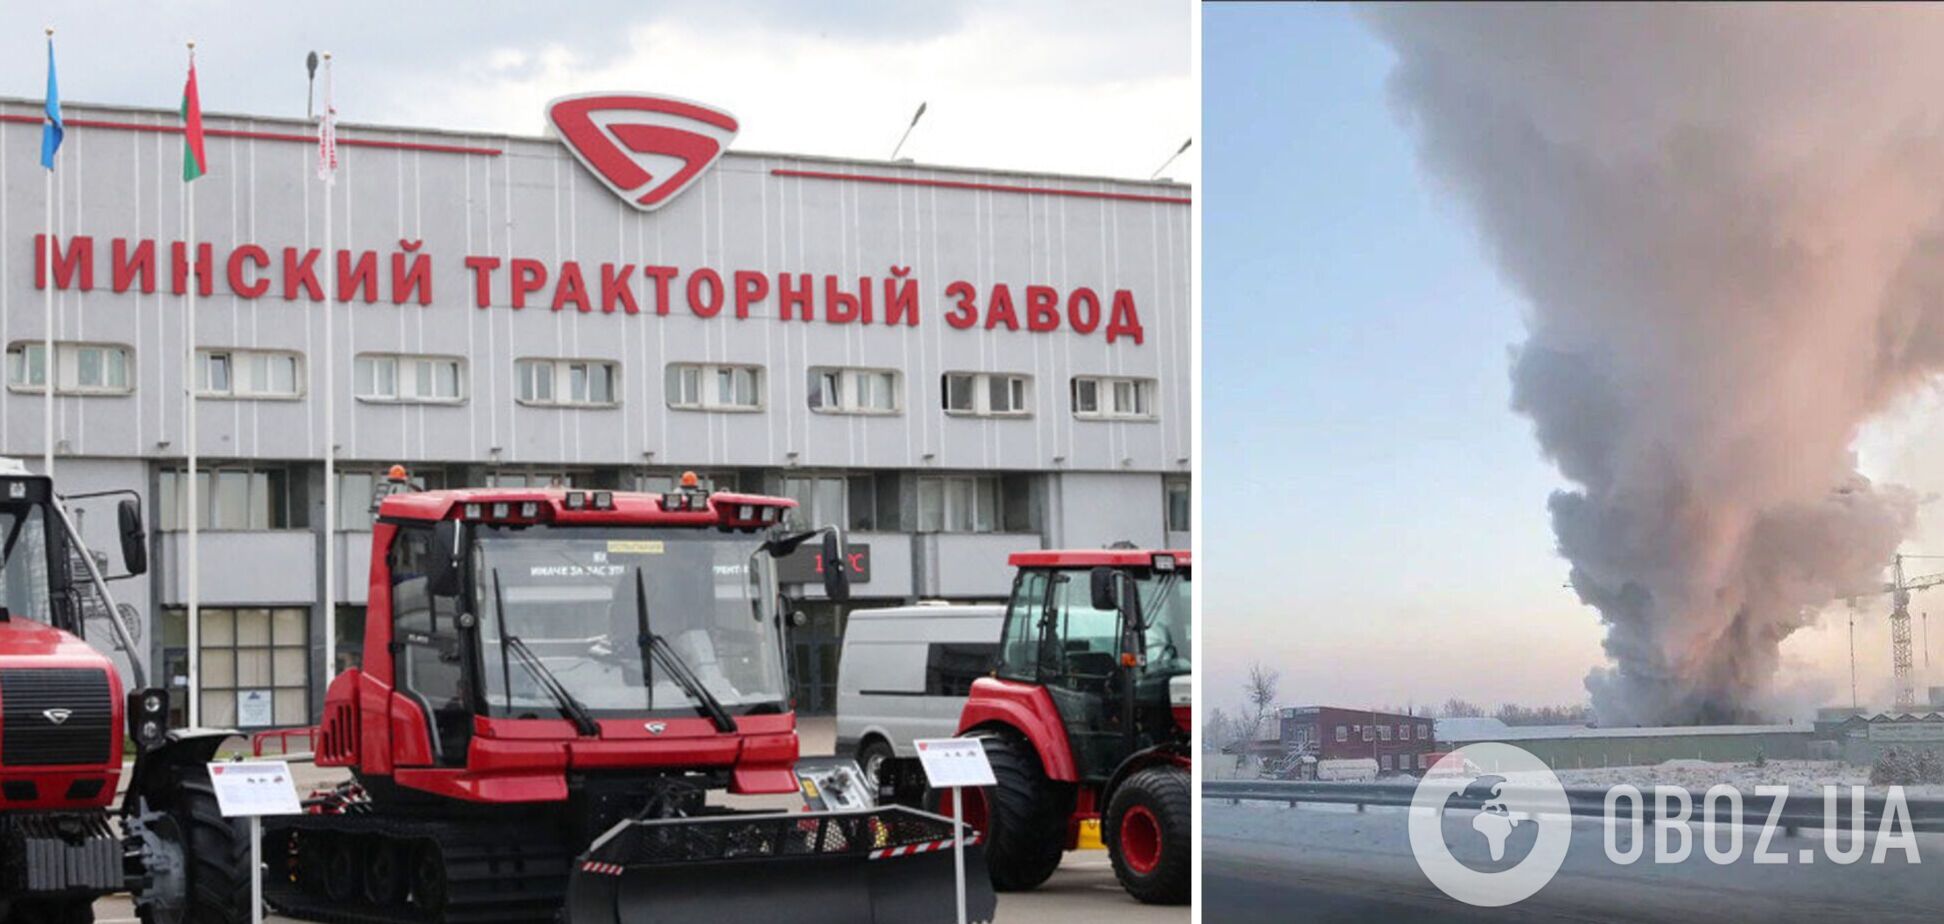 У Санкт-Петербурзі спалахнула потужна пожежа, вогонь охопив завод 'Білорусь МТЗ': є загиблі. Відео